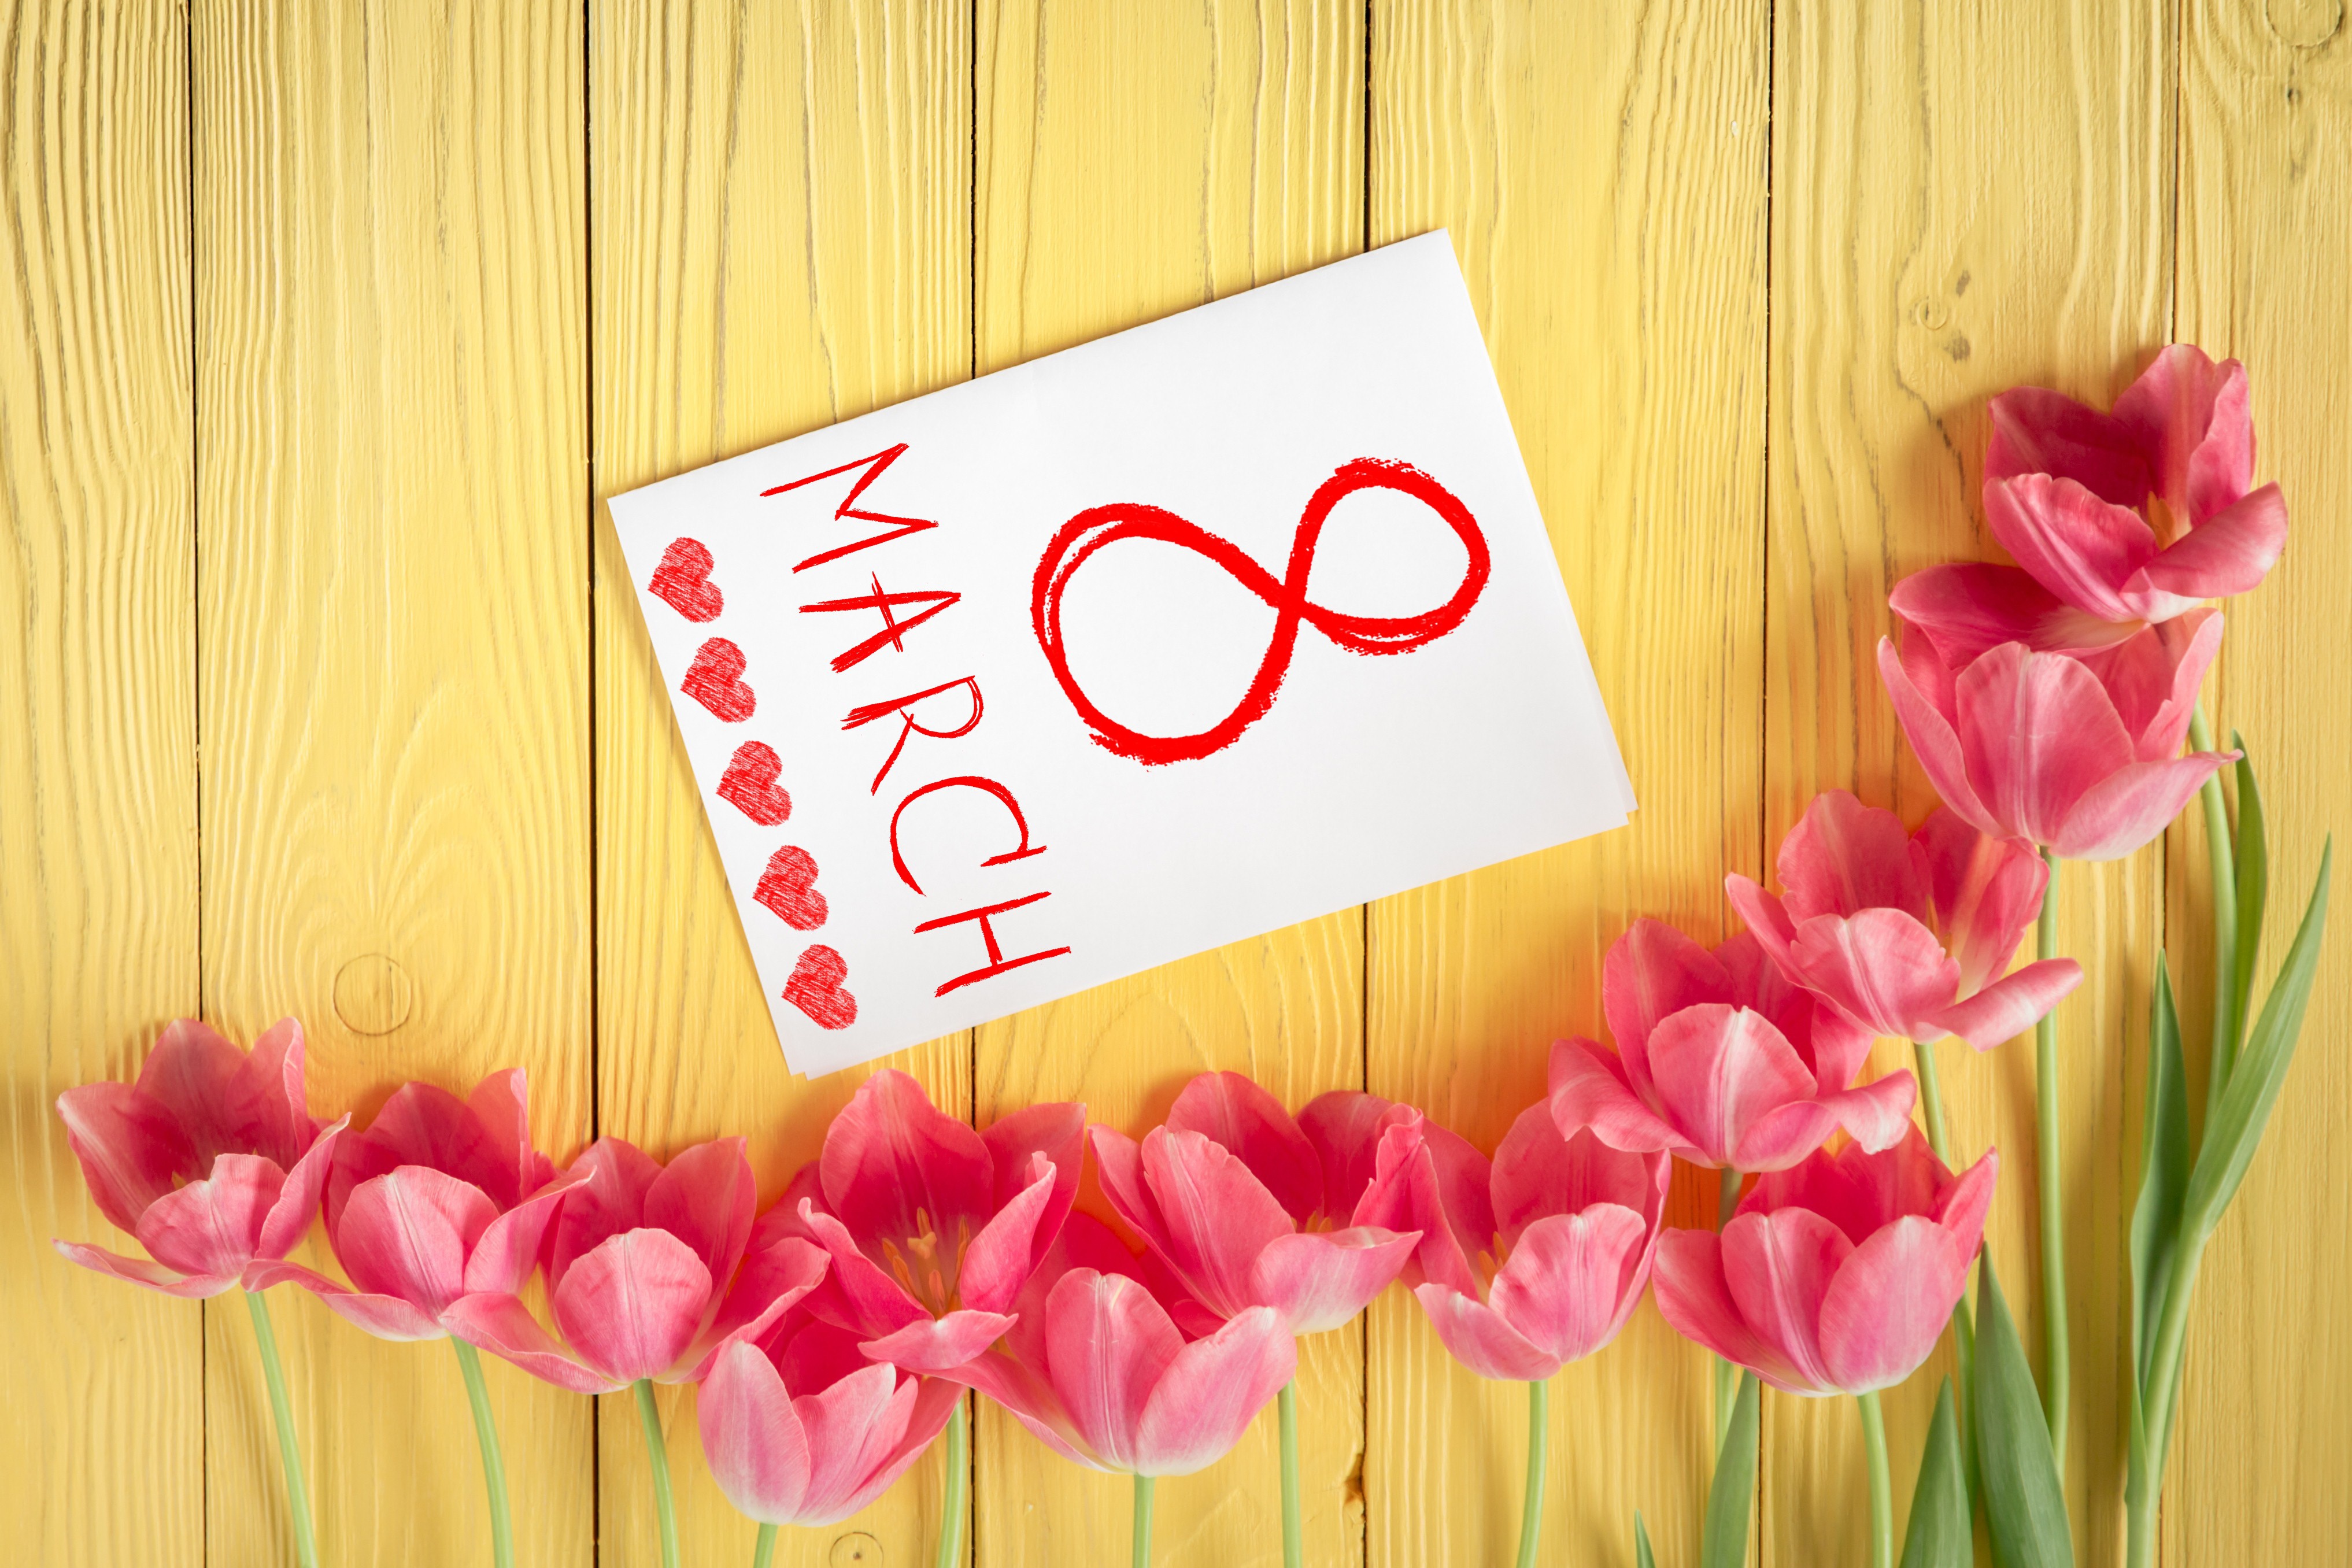 8 марта международный женский день красивый нежный праздник  8 марта международный женский день праздник весны тепла красивые открытки ко дню 8 марта с яркими цветами тюльпанами для милых дам роскошный цветок весны ассоциирующийся с праздником